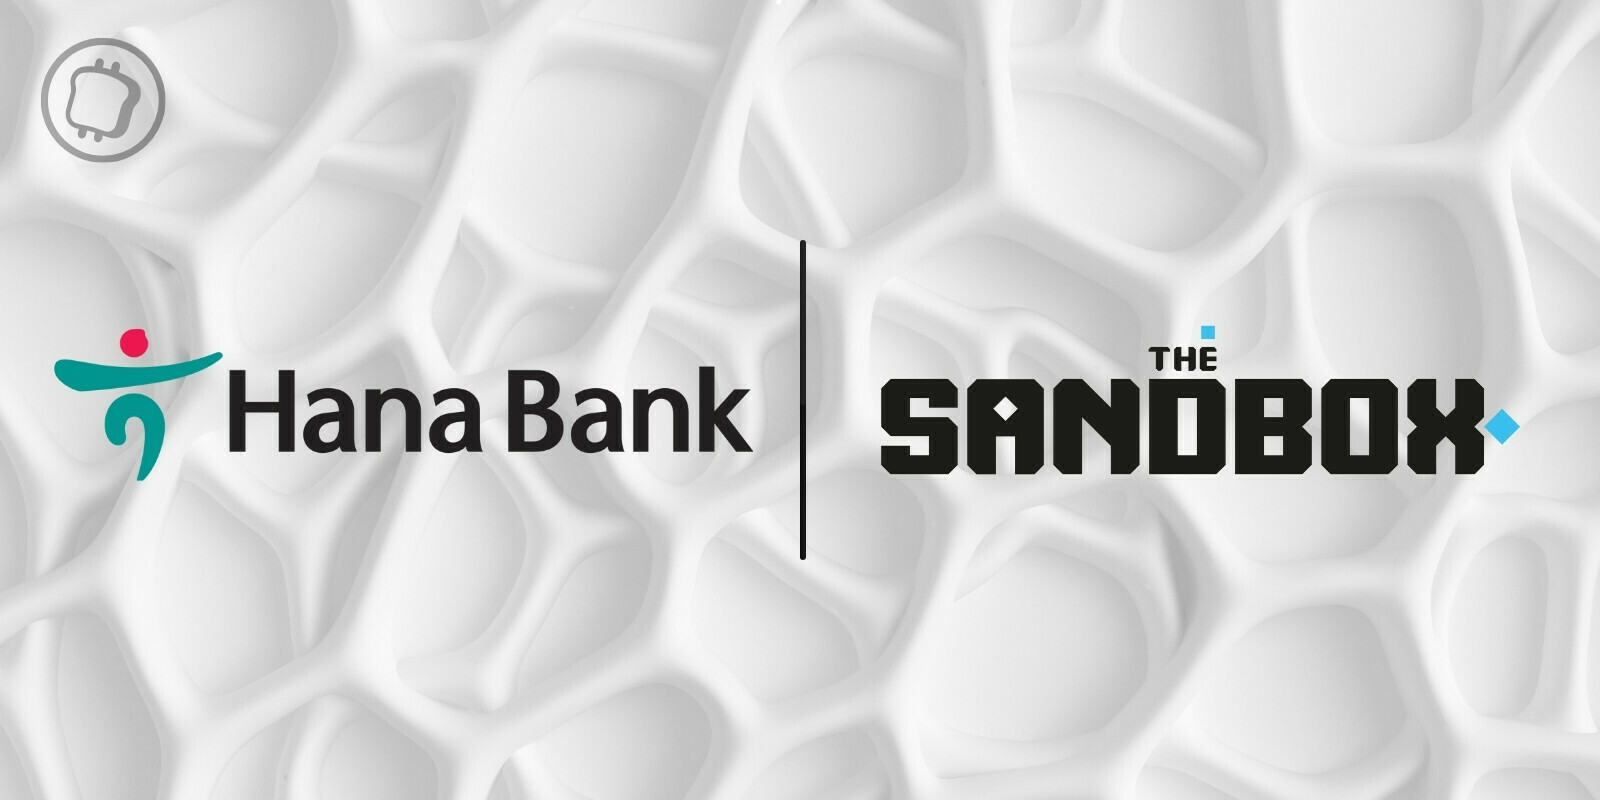 La banque sud-coréenne KEB Hana Bank débarque dans The Sandbox (SAND)